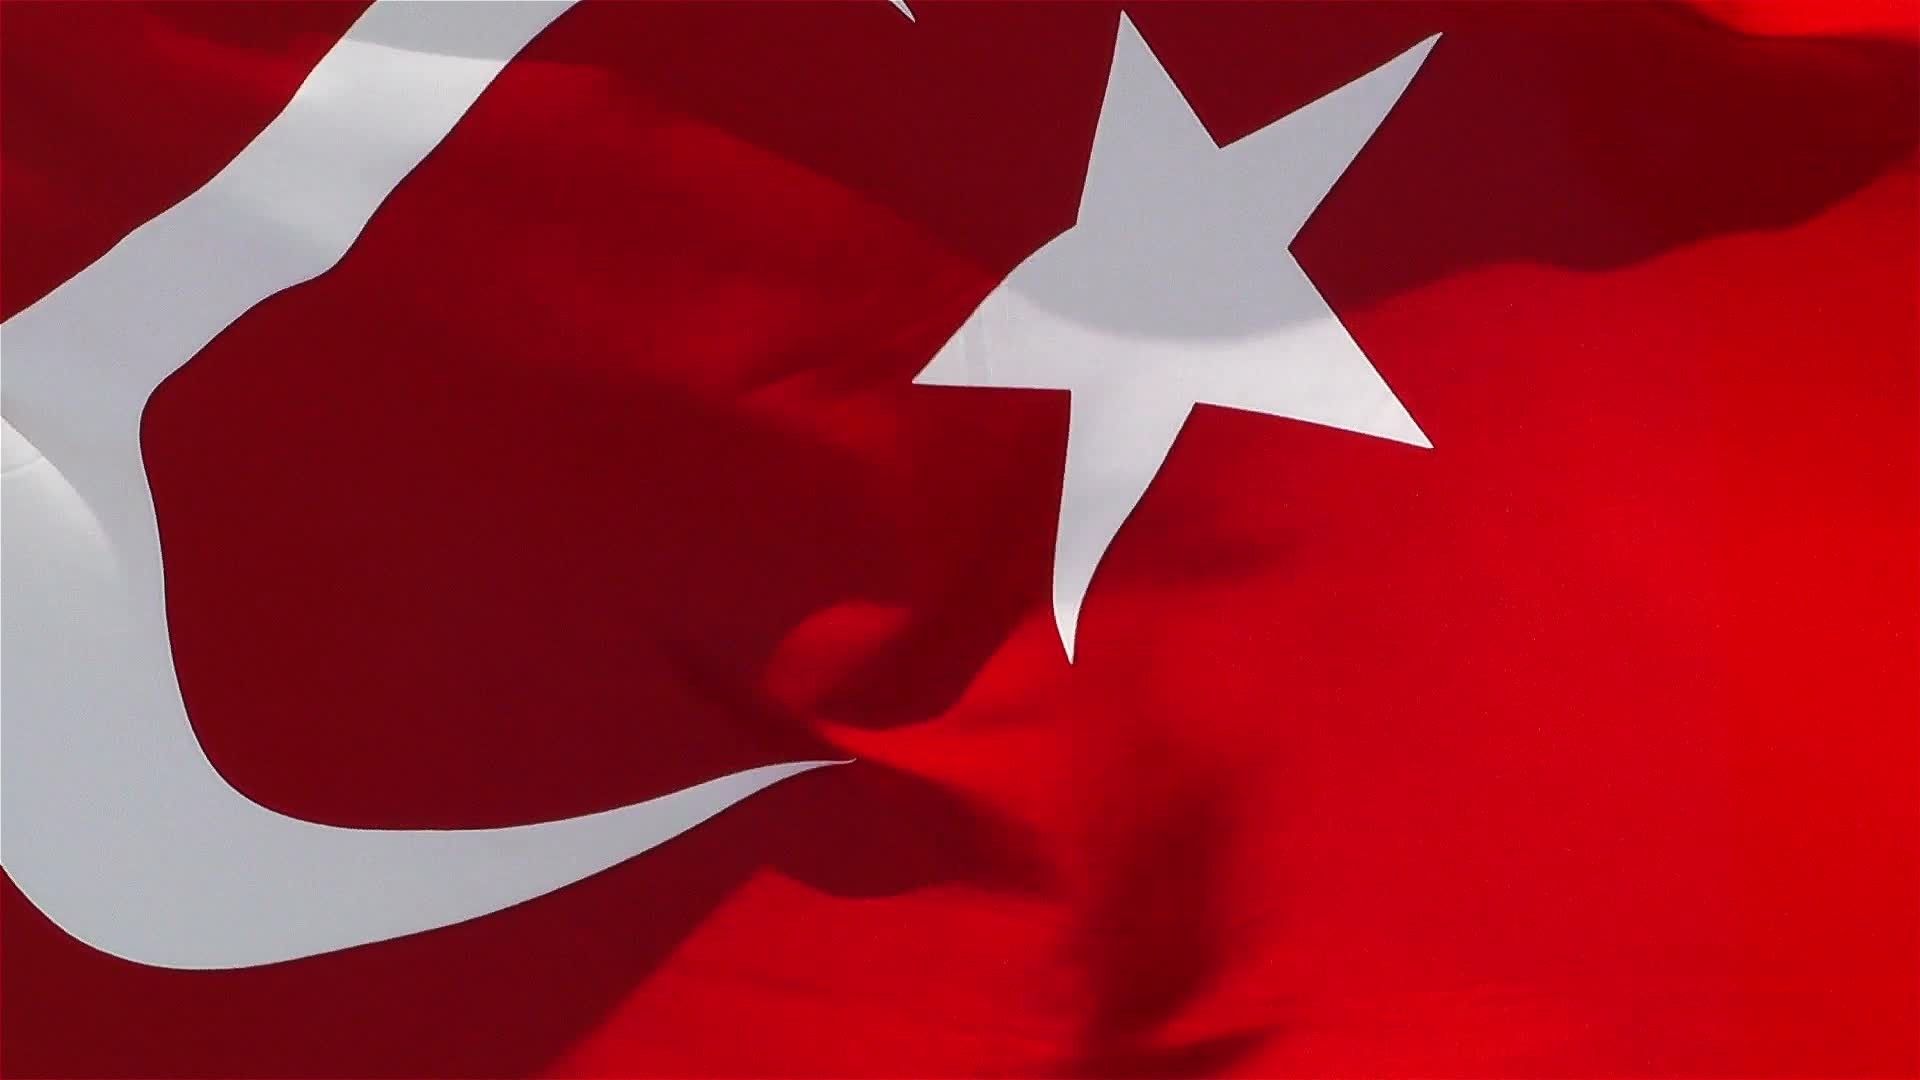 ay yildiz turk bayragi 8